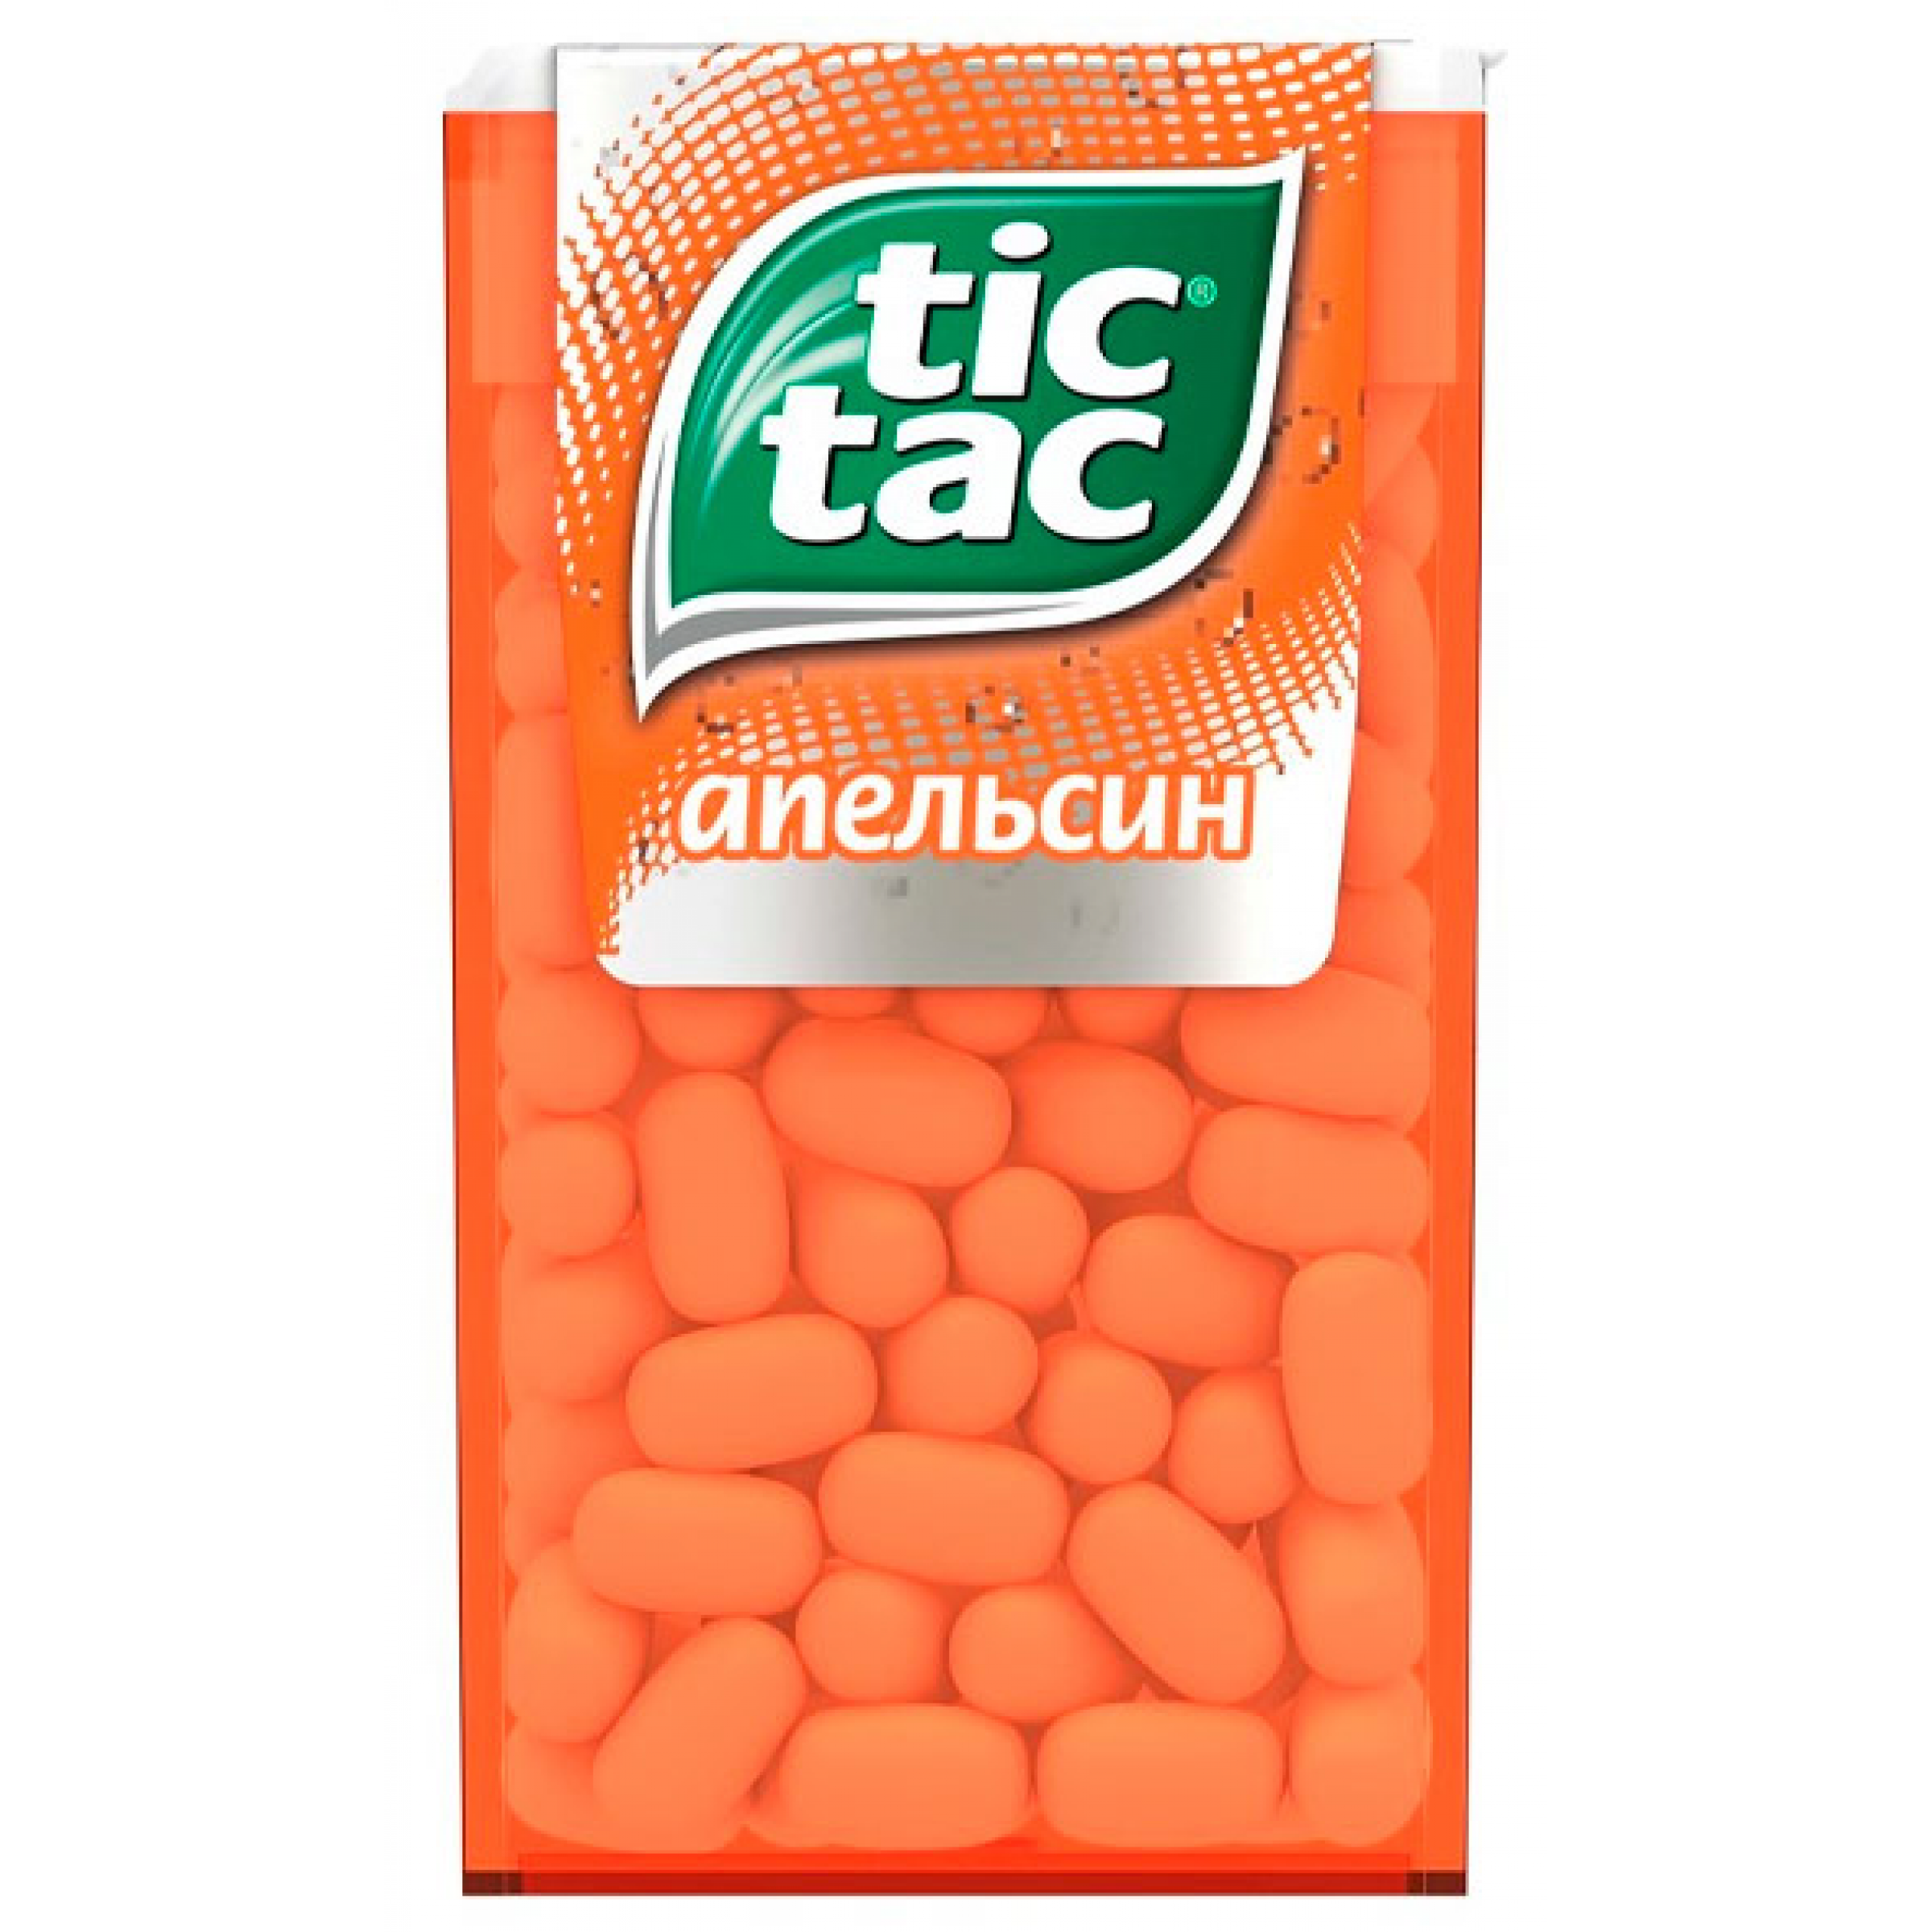 Драже Tic Tac со вкусом апельсина, 16гр.